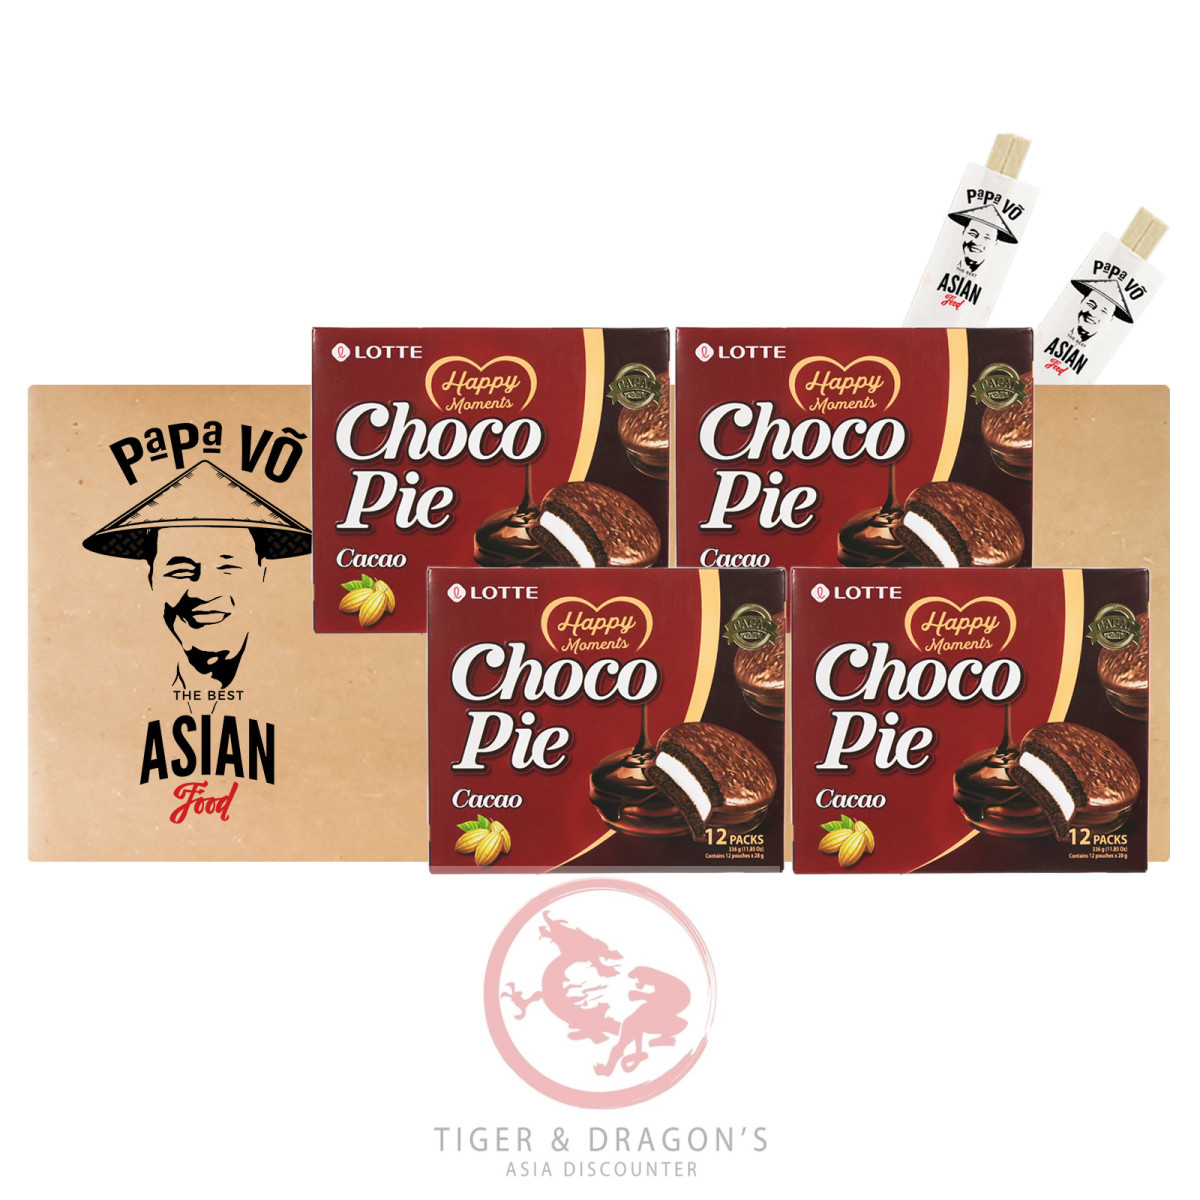 Lotte Choco Pie Kakao 4x336g